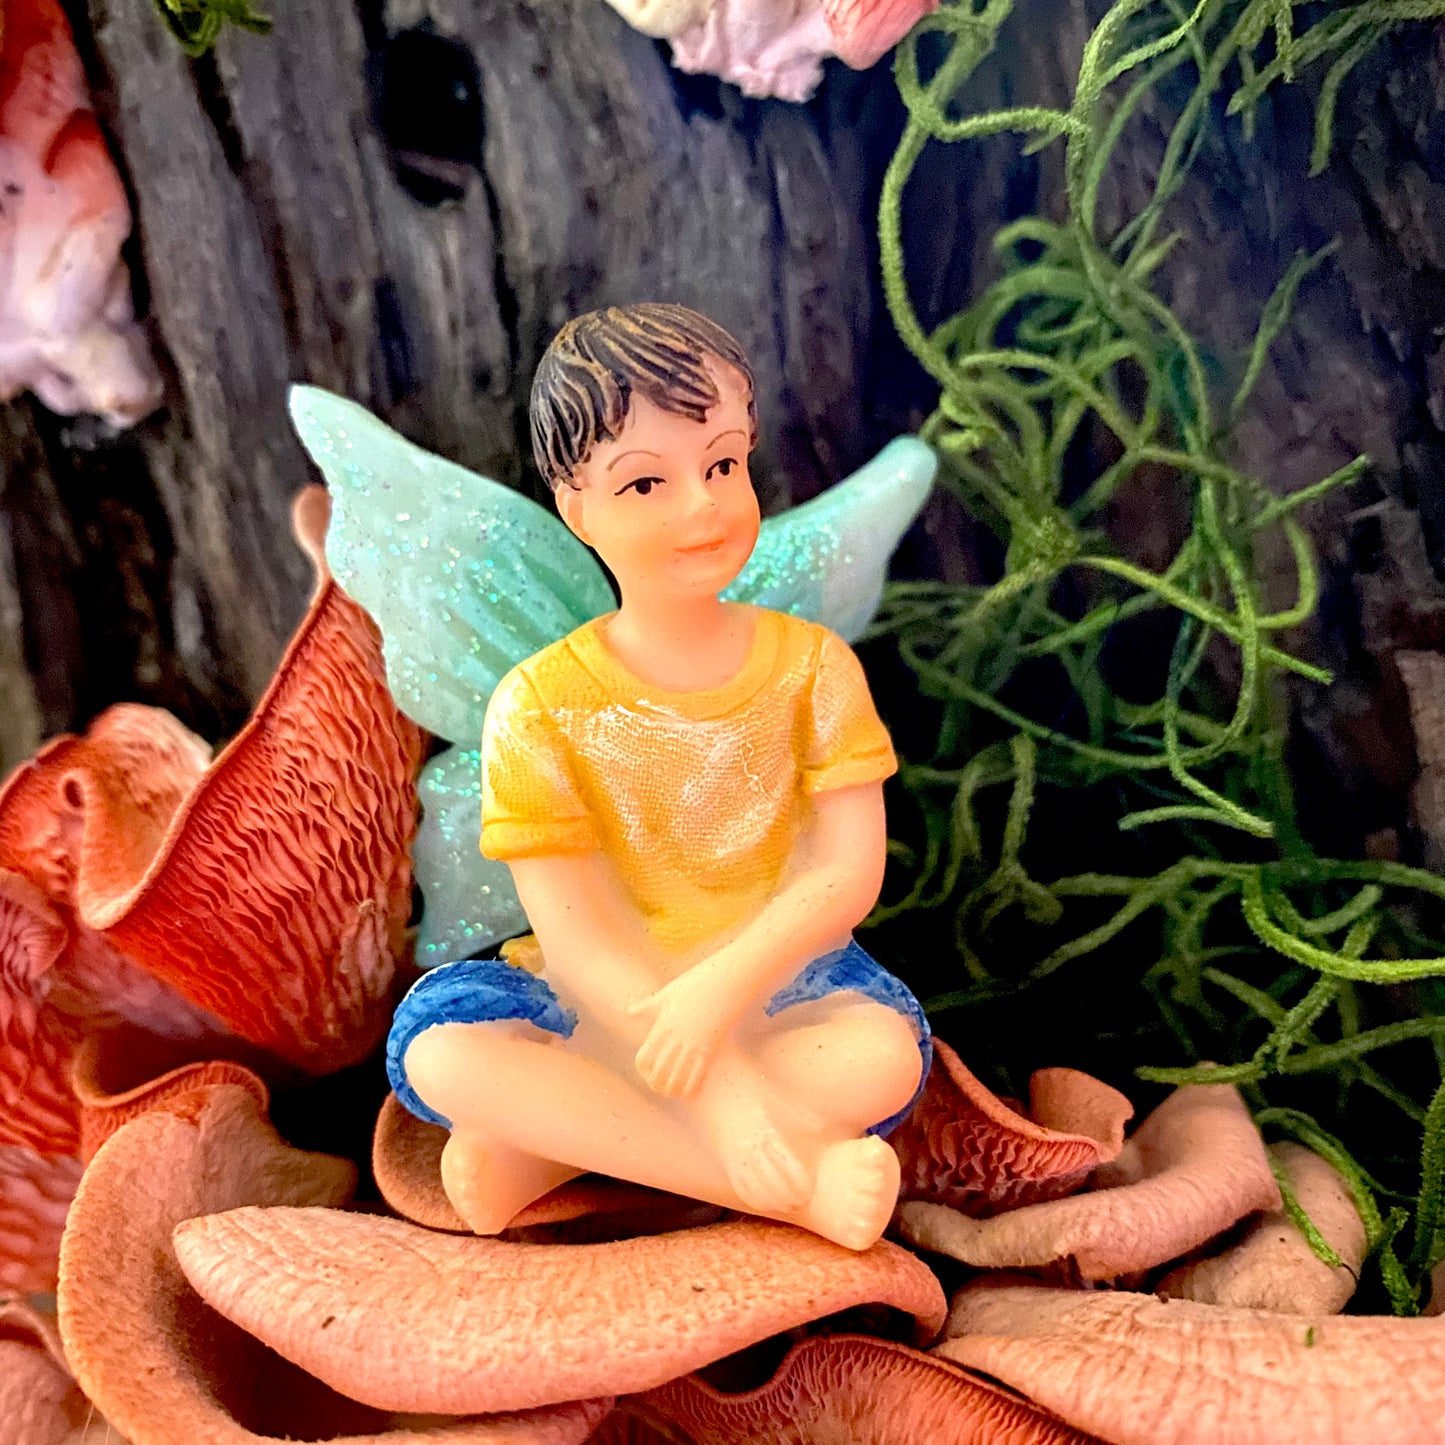 Fairy Oliver, Australian Fairy Gardens, Fairies